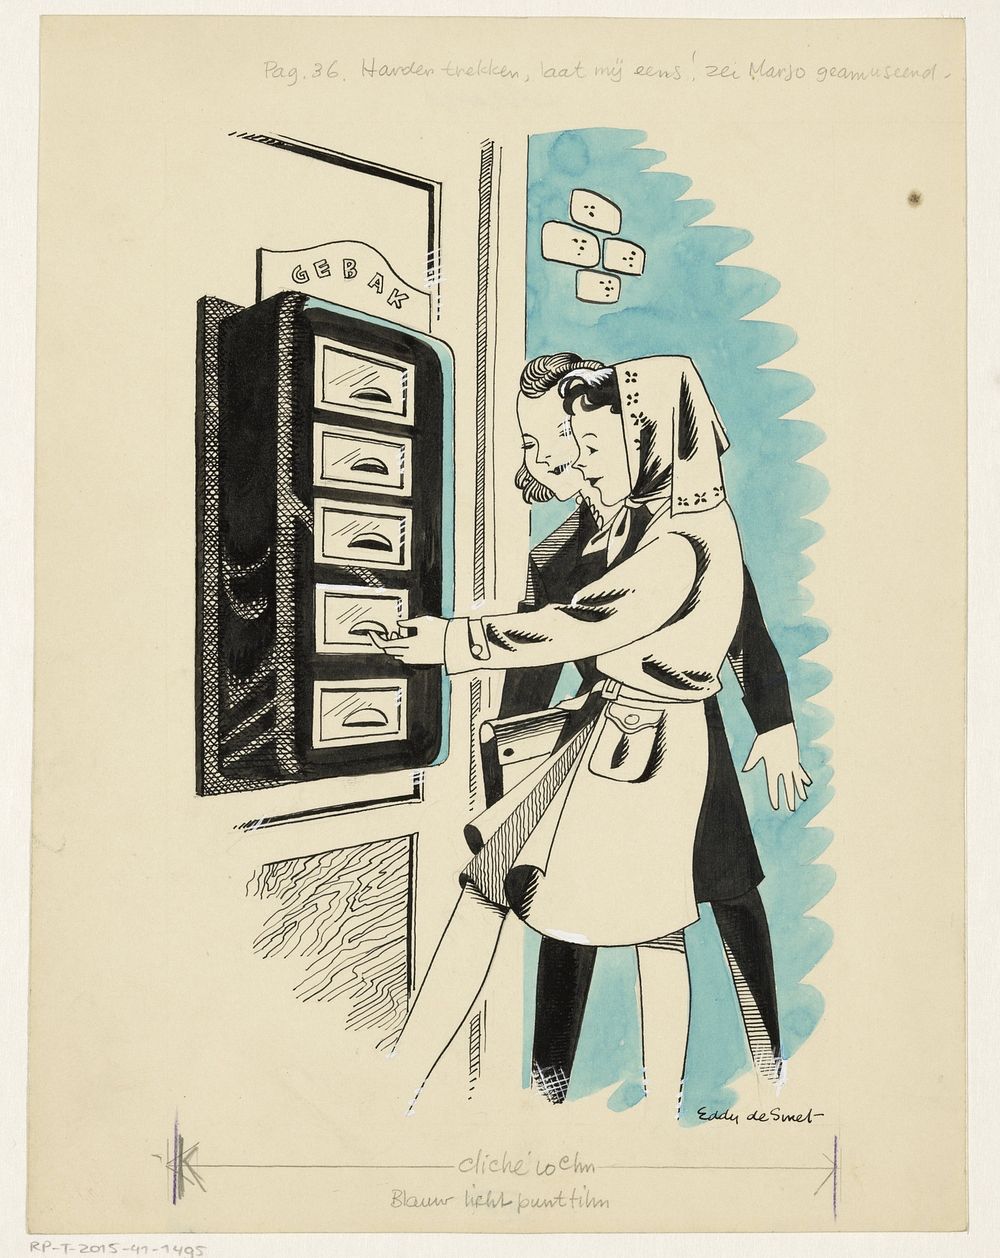 Marjo bij een loket met gebak (in or before 1946) by Eddy de Smet